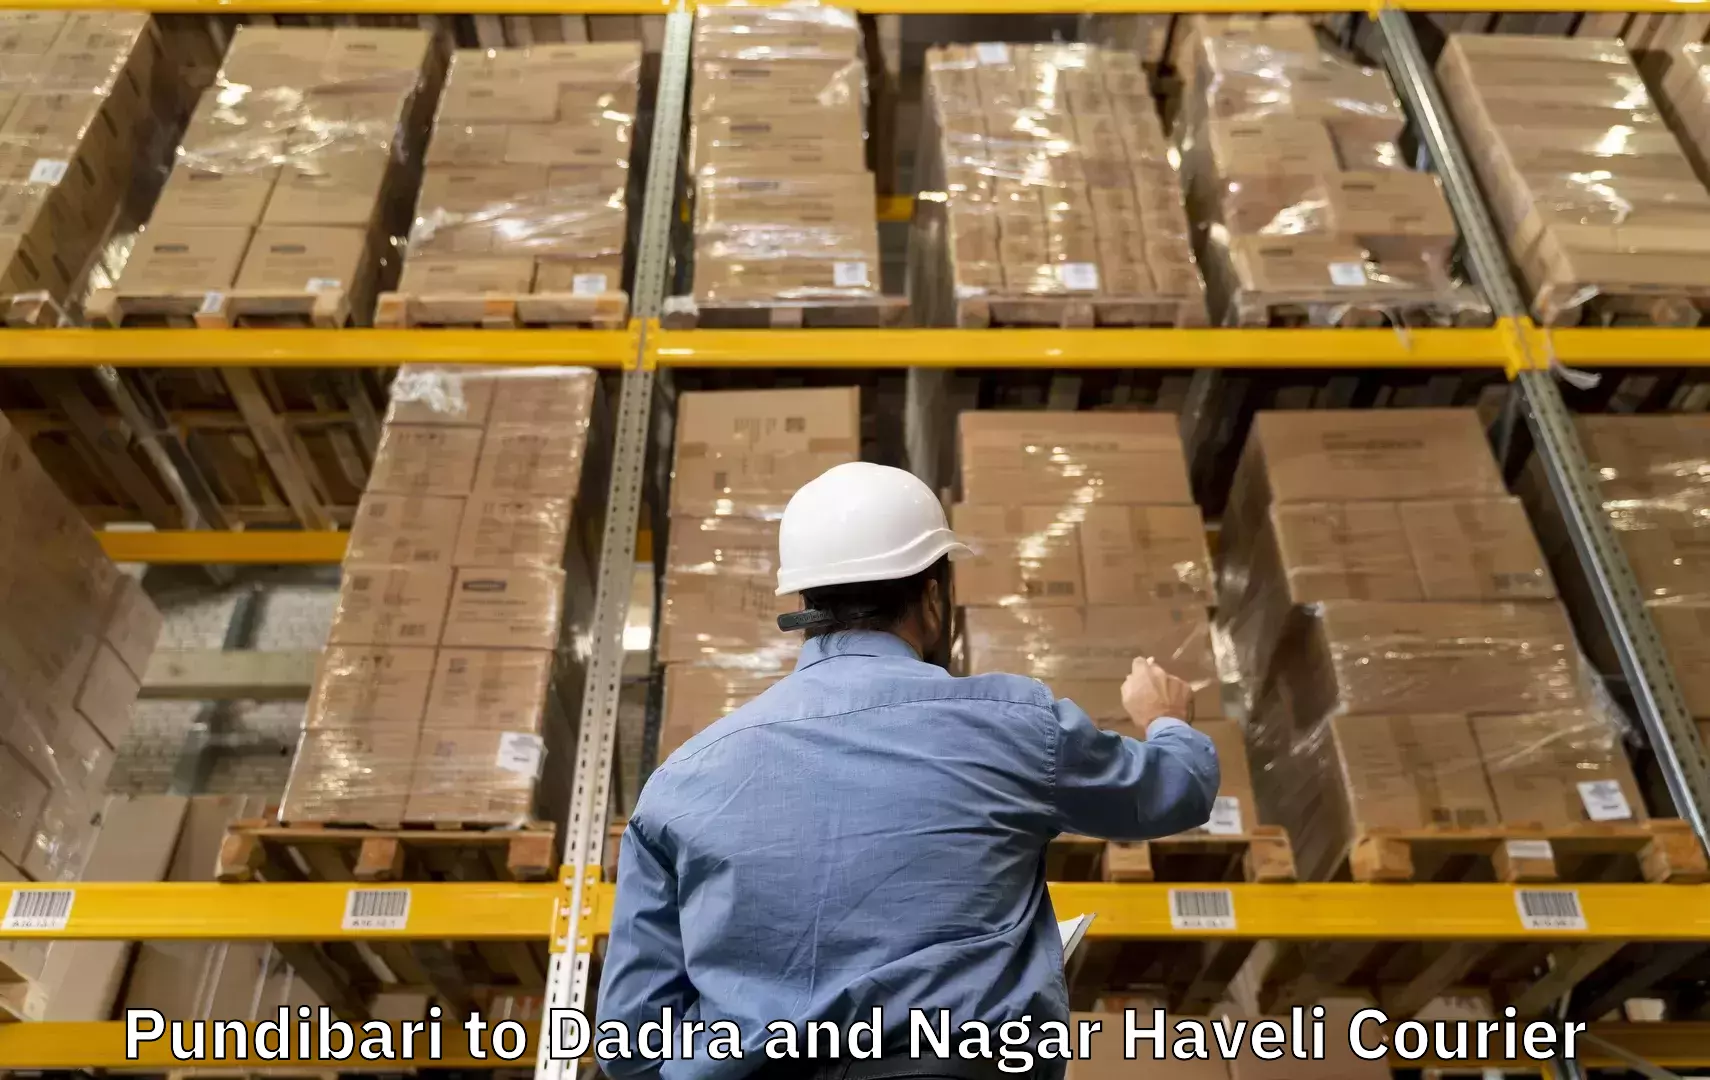 Electronic items luggage shipping Pundibari to Dadra and Nagar Haveli